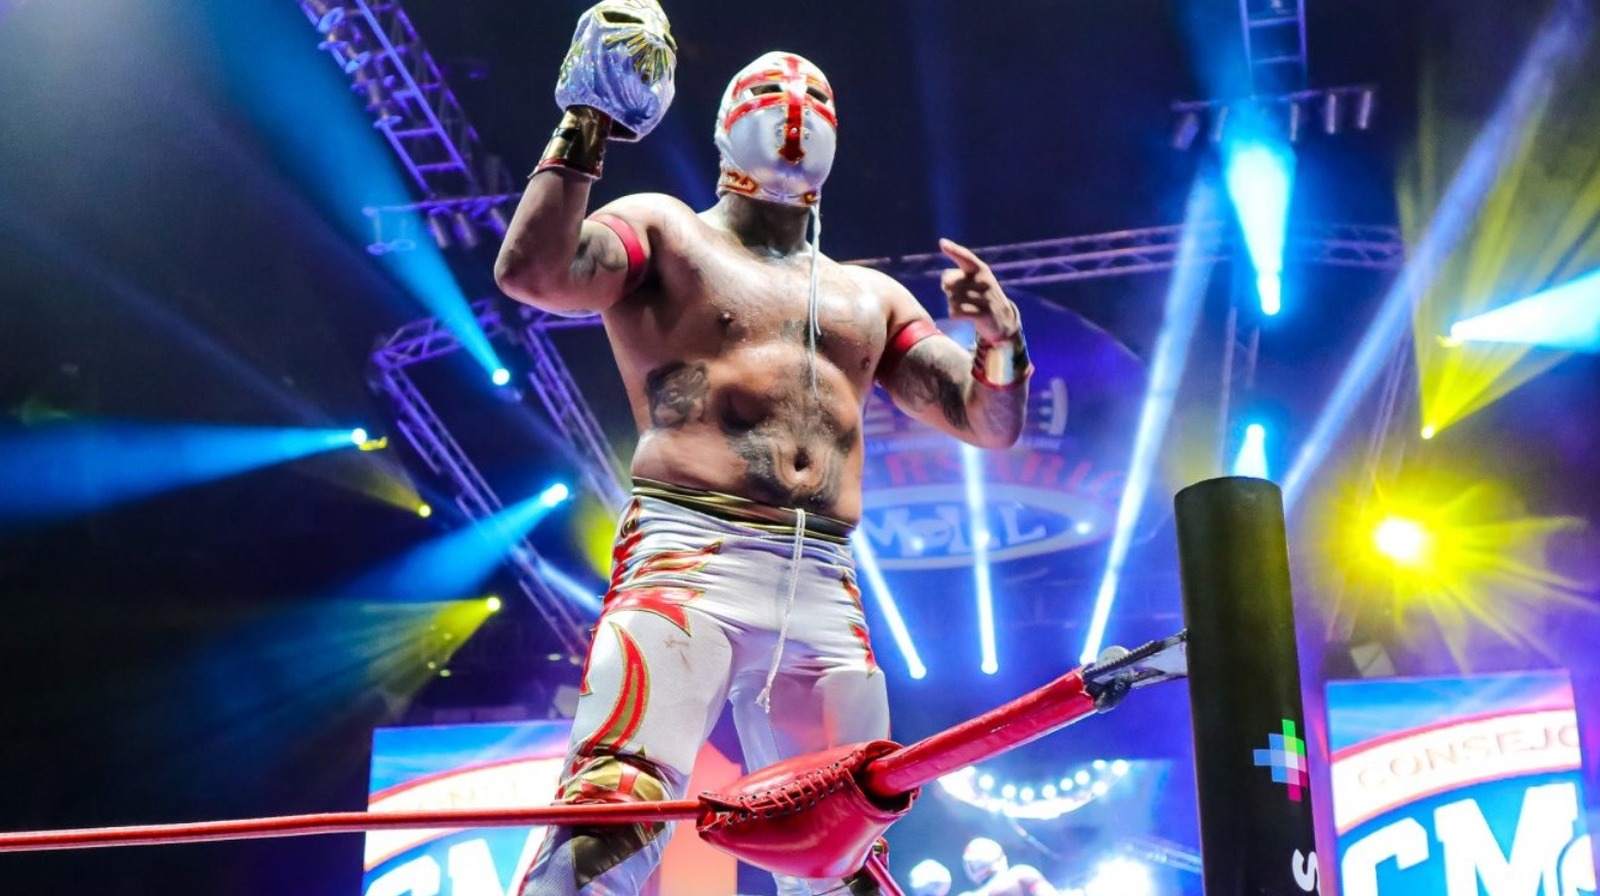 Luchadores del CMLL competirán en combate de exhibición en el juego de la Semana 7 de la NFL